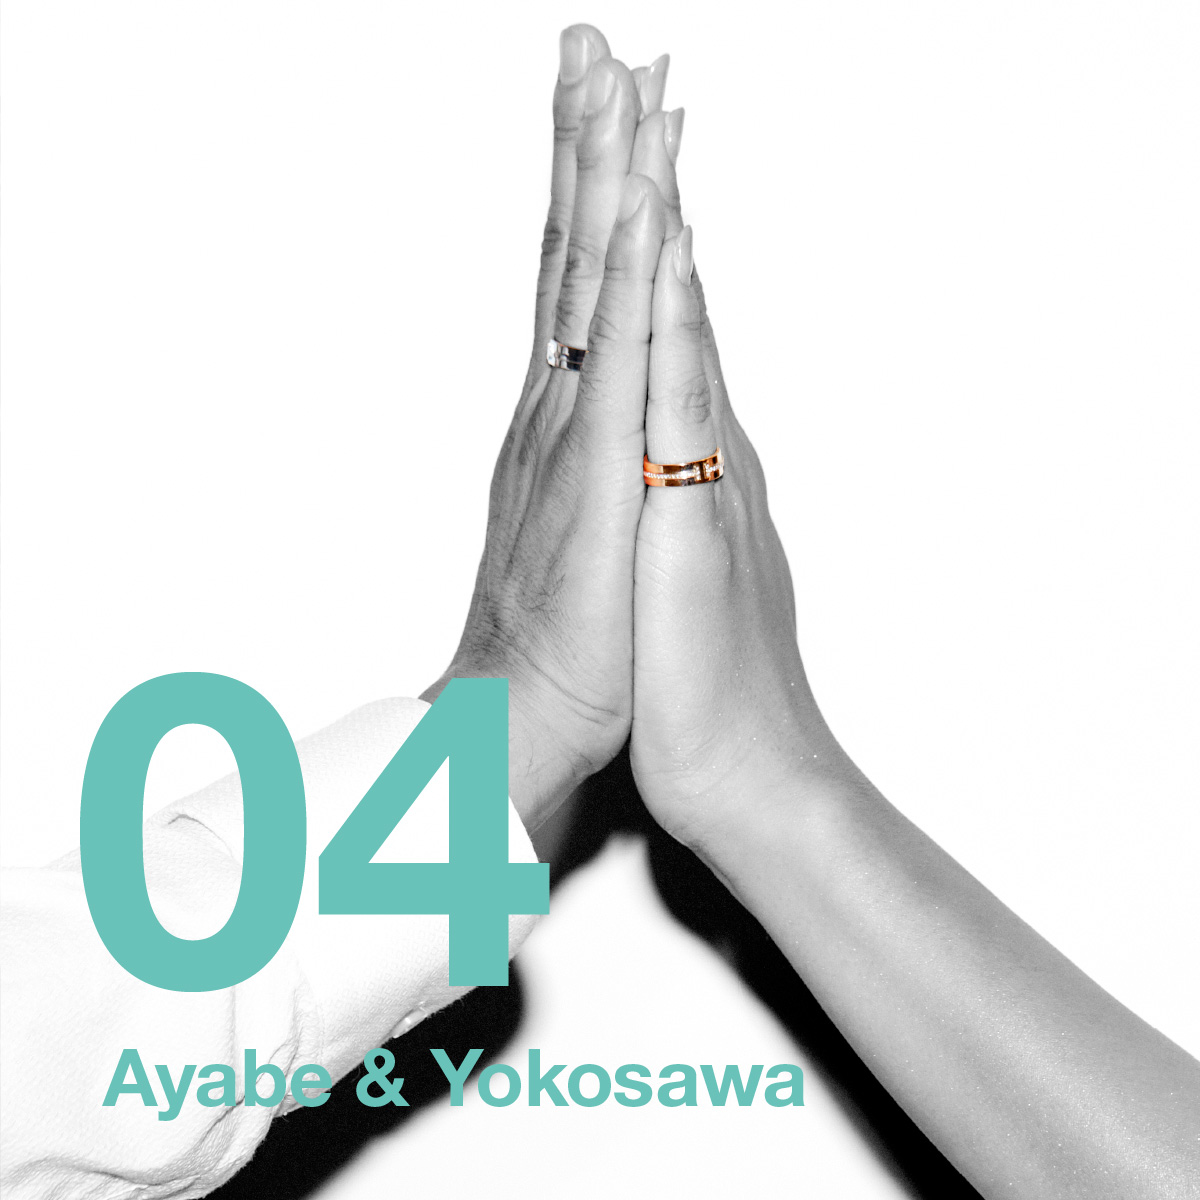 Ayabe & Yokosawa